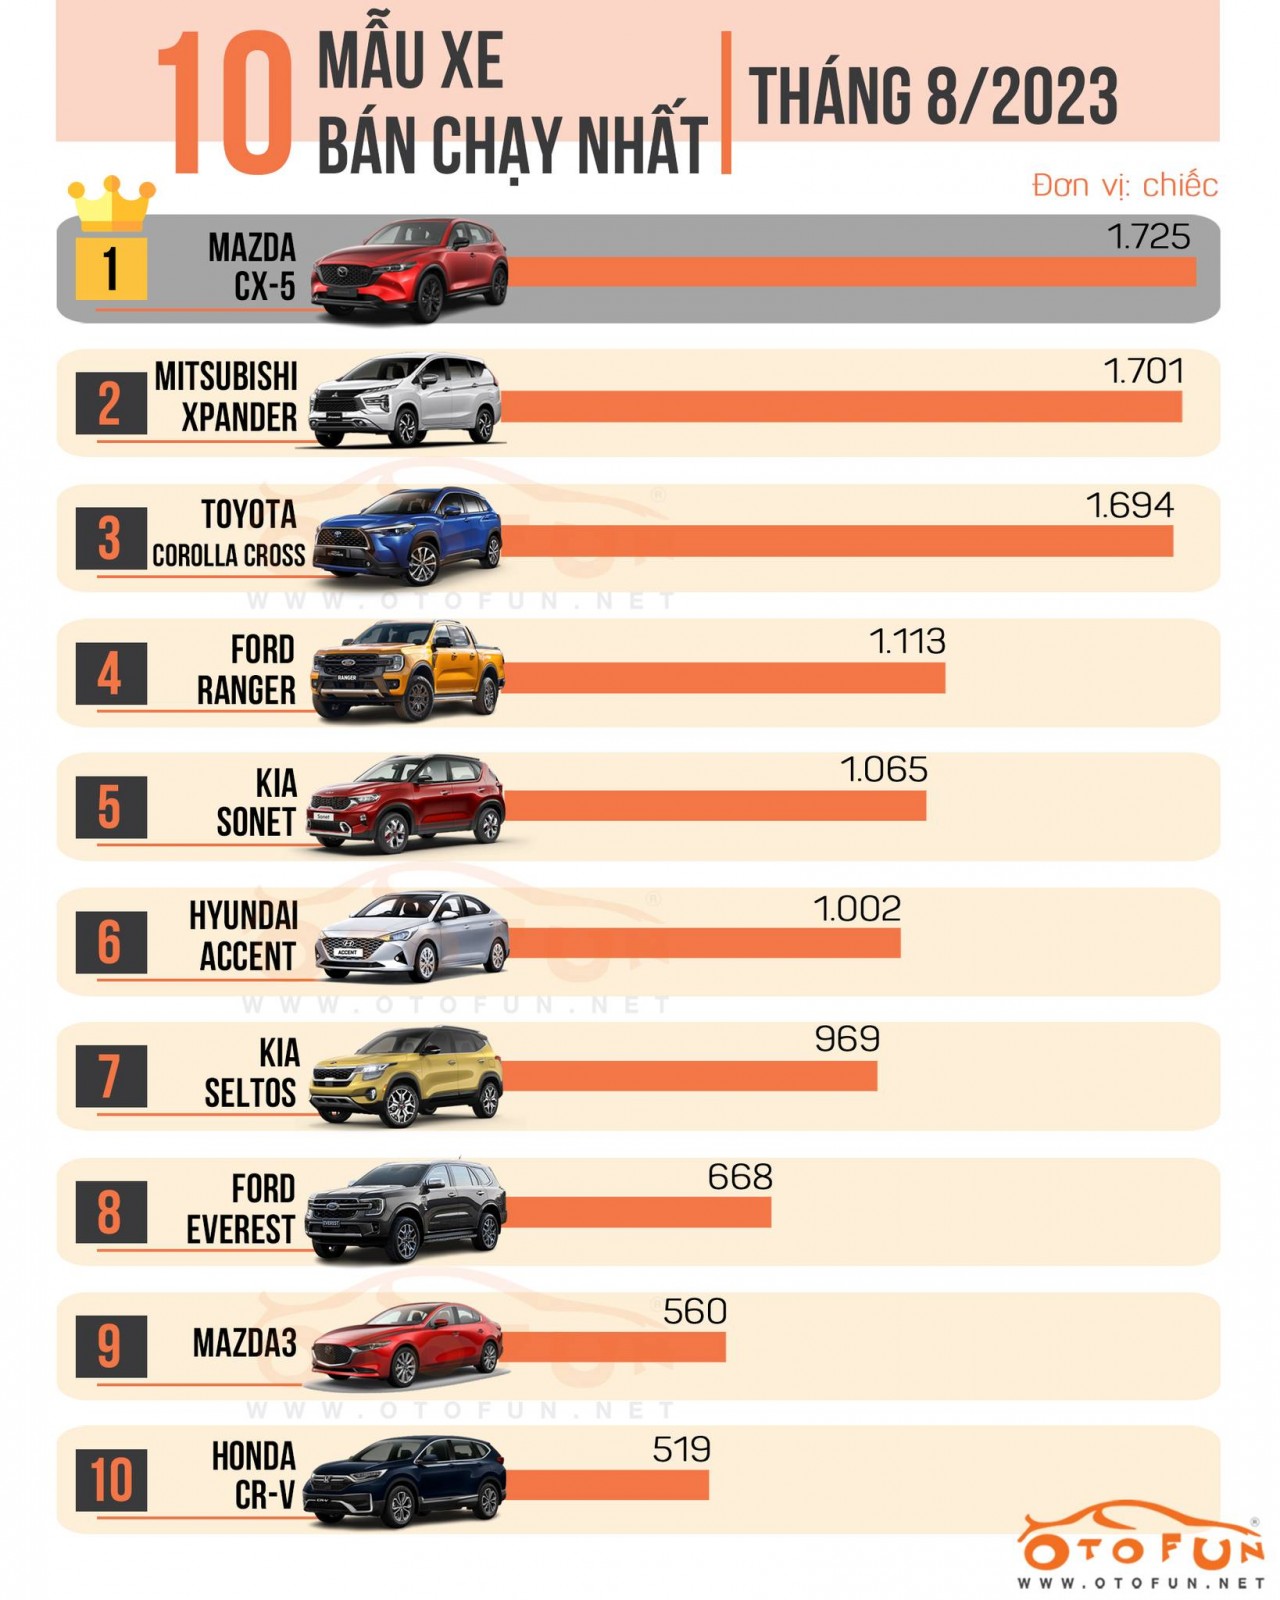 [Infographic] Top 10 xe bán chạy nhất tháng 8/2023 tại Việt Nam